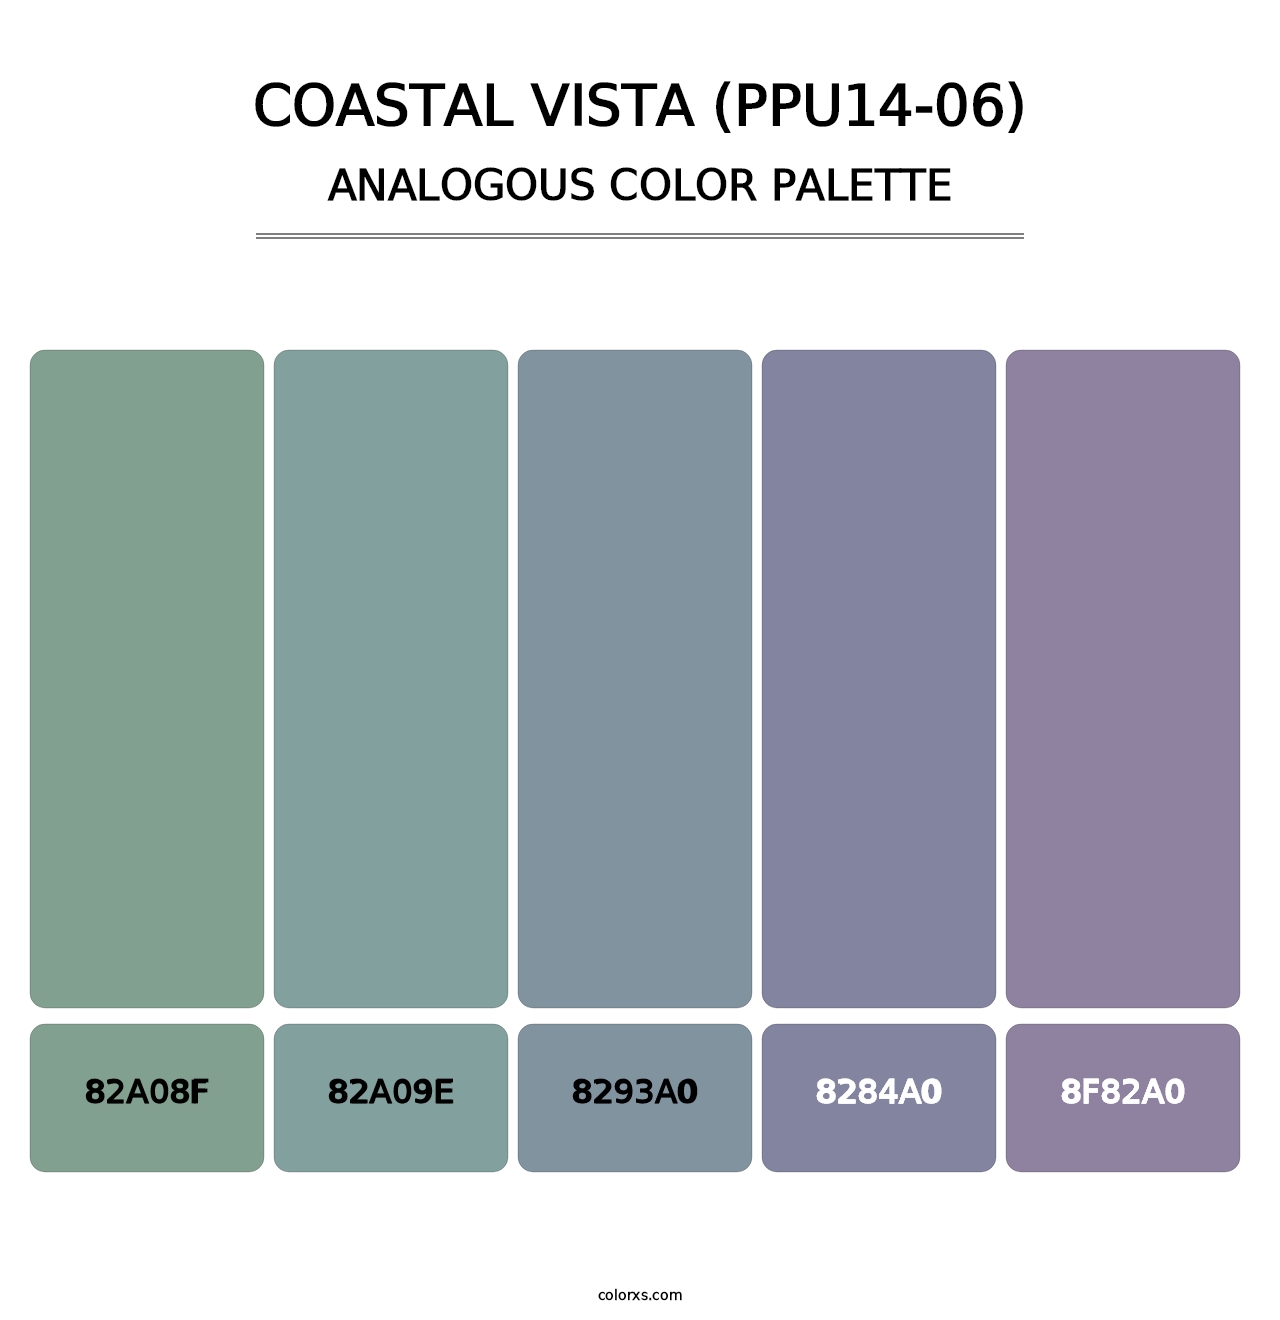 Coastal Vista (PPU14-06) - Analogous Color Palette